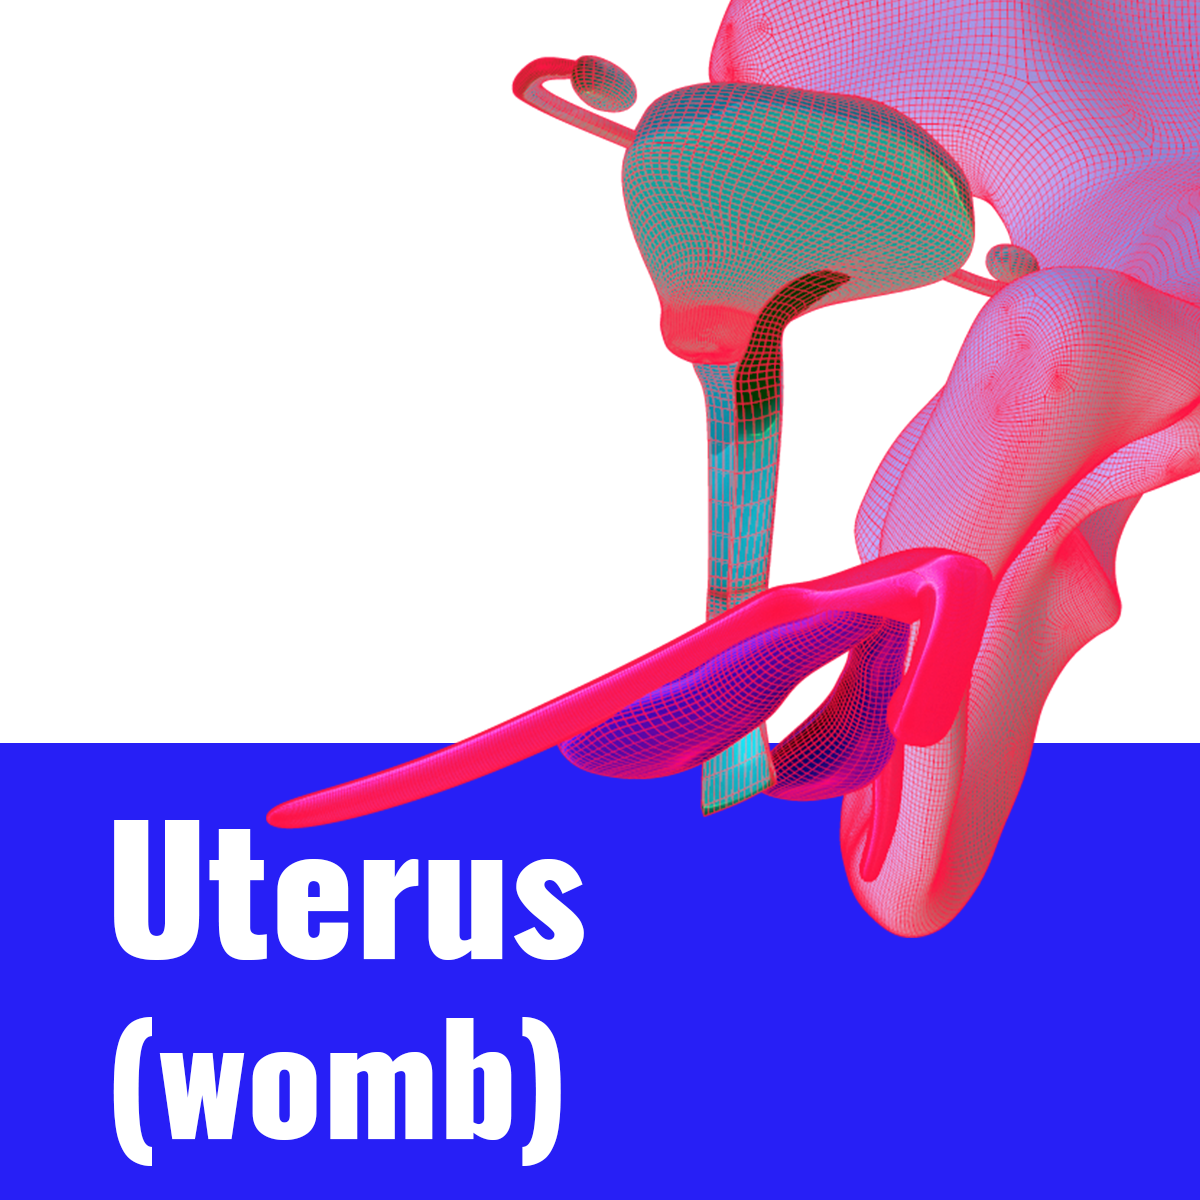 5 Uterus thumbnail V2.png